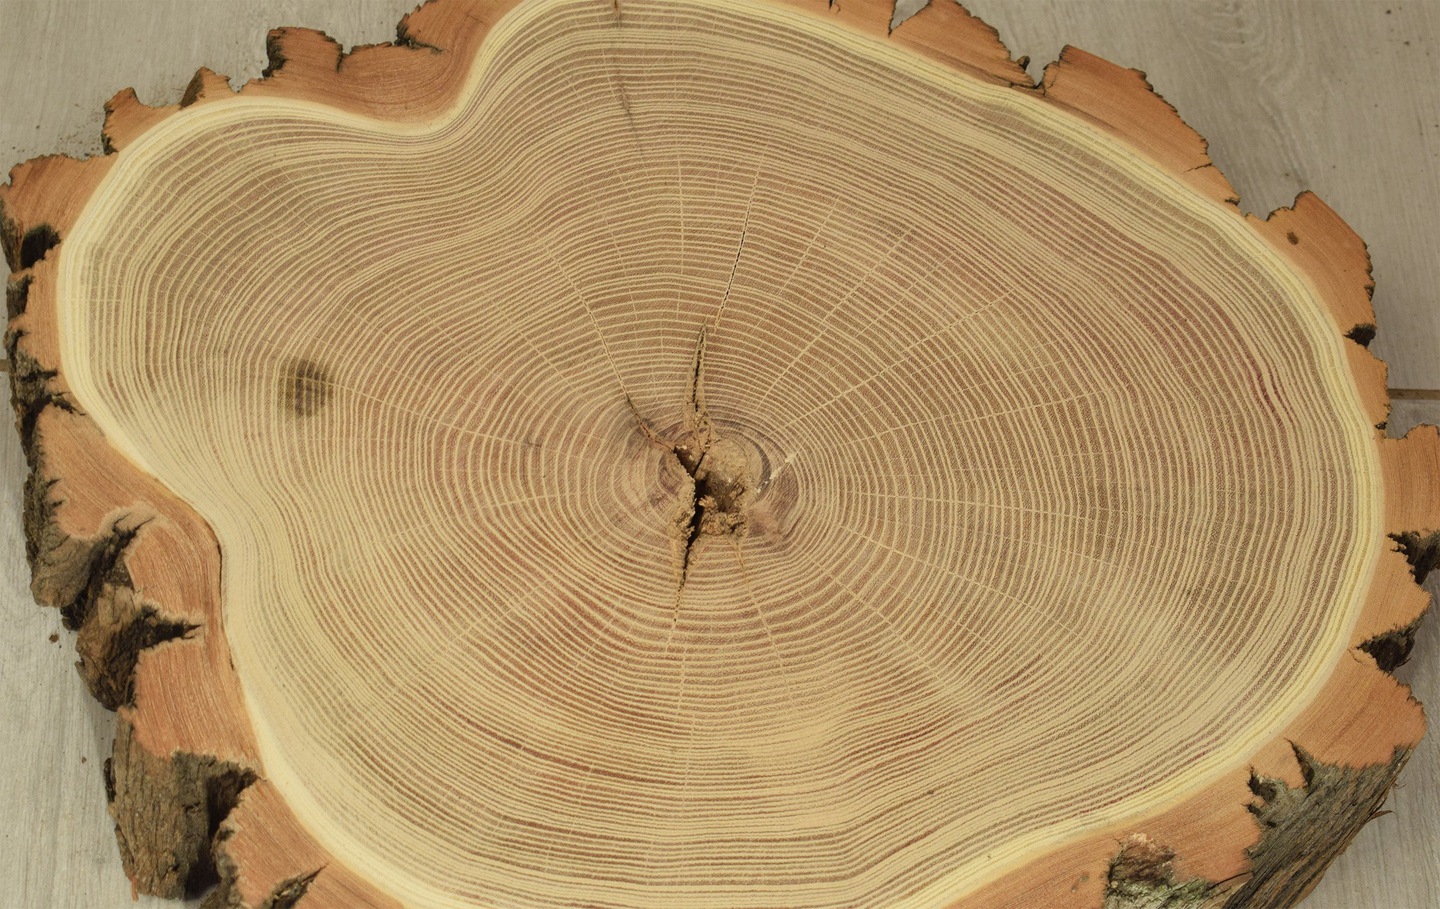 Как узнать сколько лет дереву по кольцам